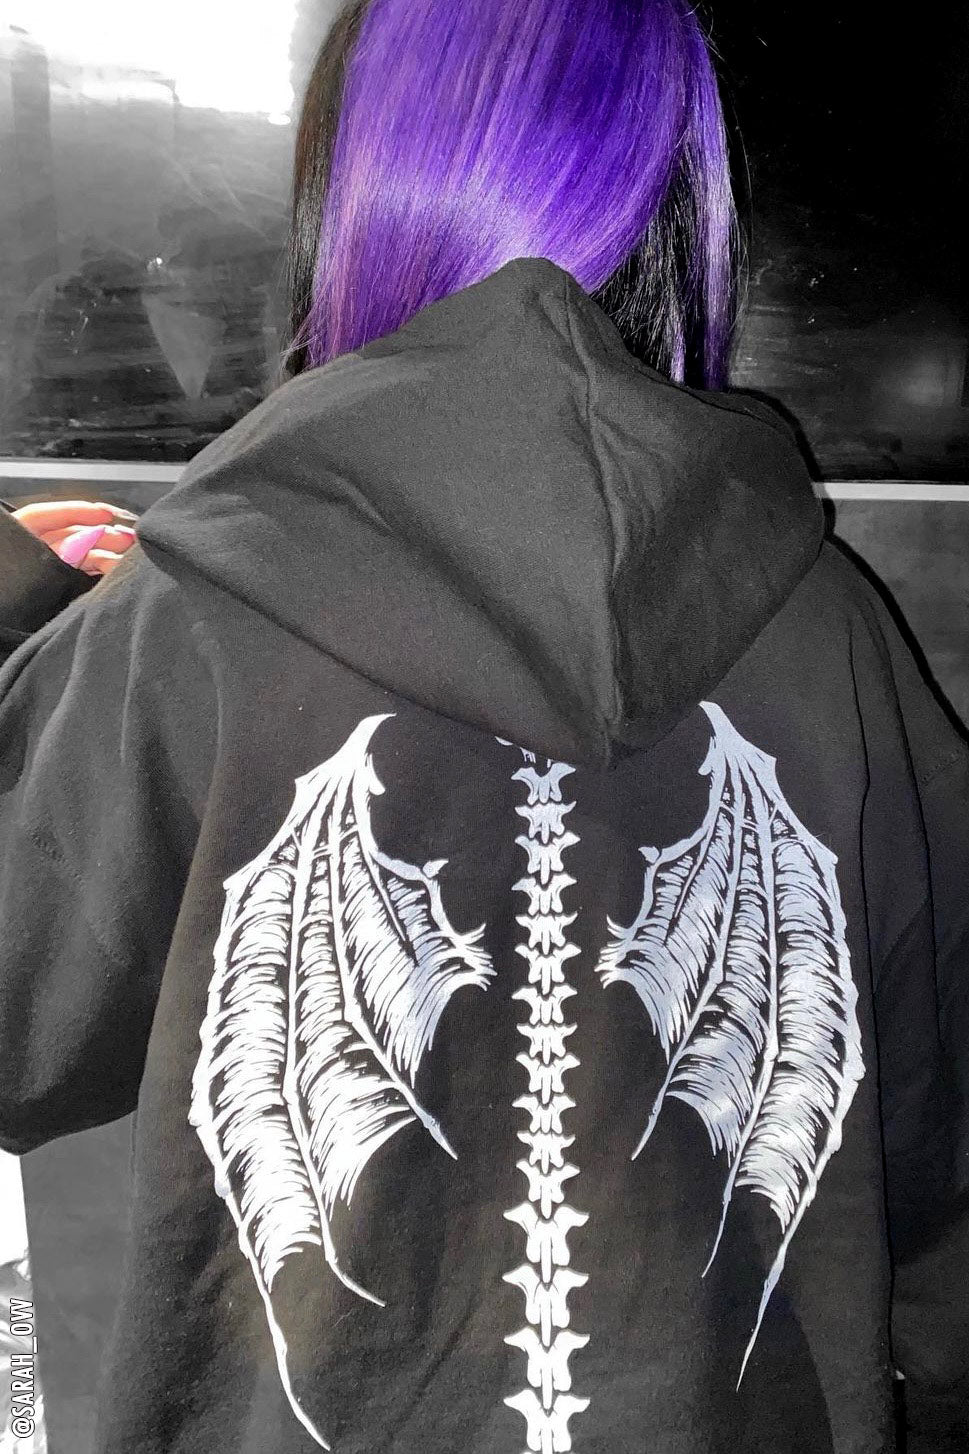 Demon Wings Hoodie [Zipper or Pullover]